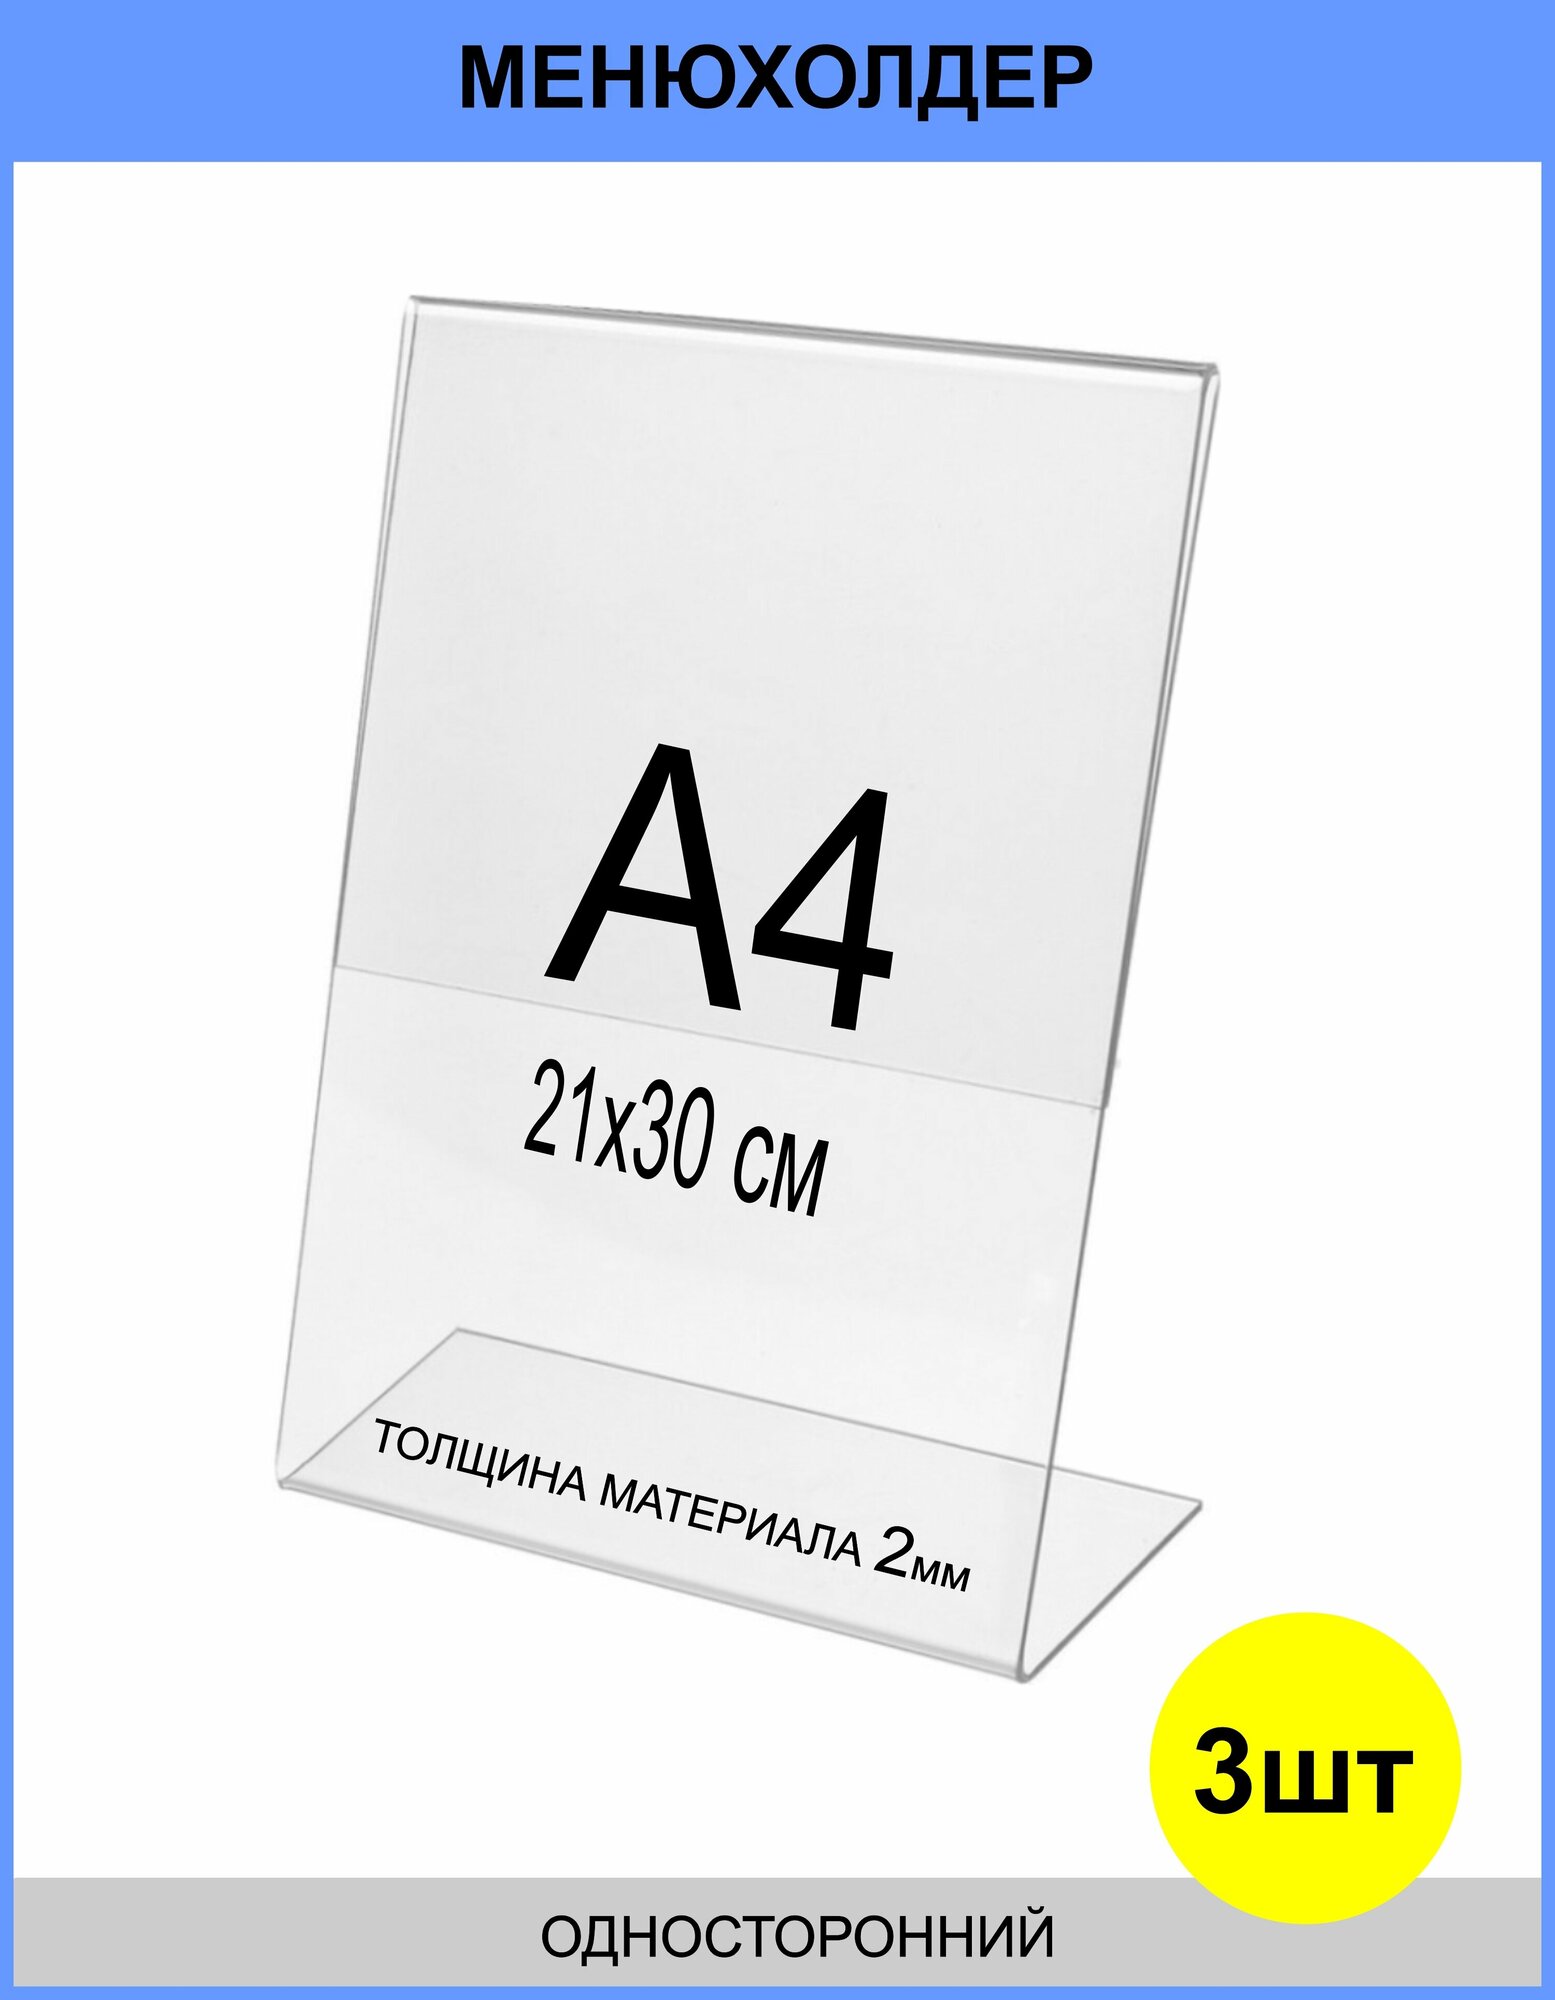 Менюхолдер А4 (тейбл тент) вертикальный односторонний (210х297 мм) 3 шт, подставка настольная для рекламных материалов из прозрачного акрила 2 мм